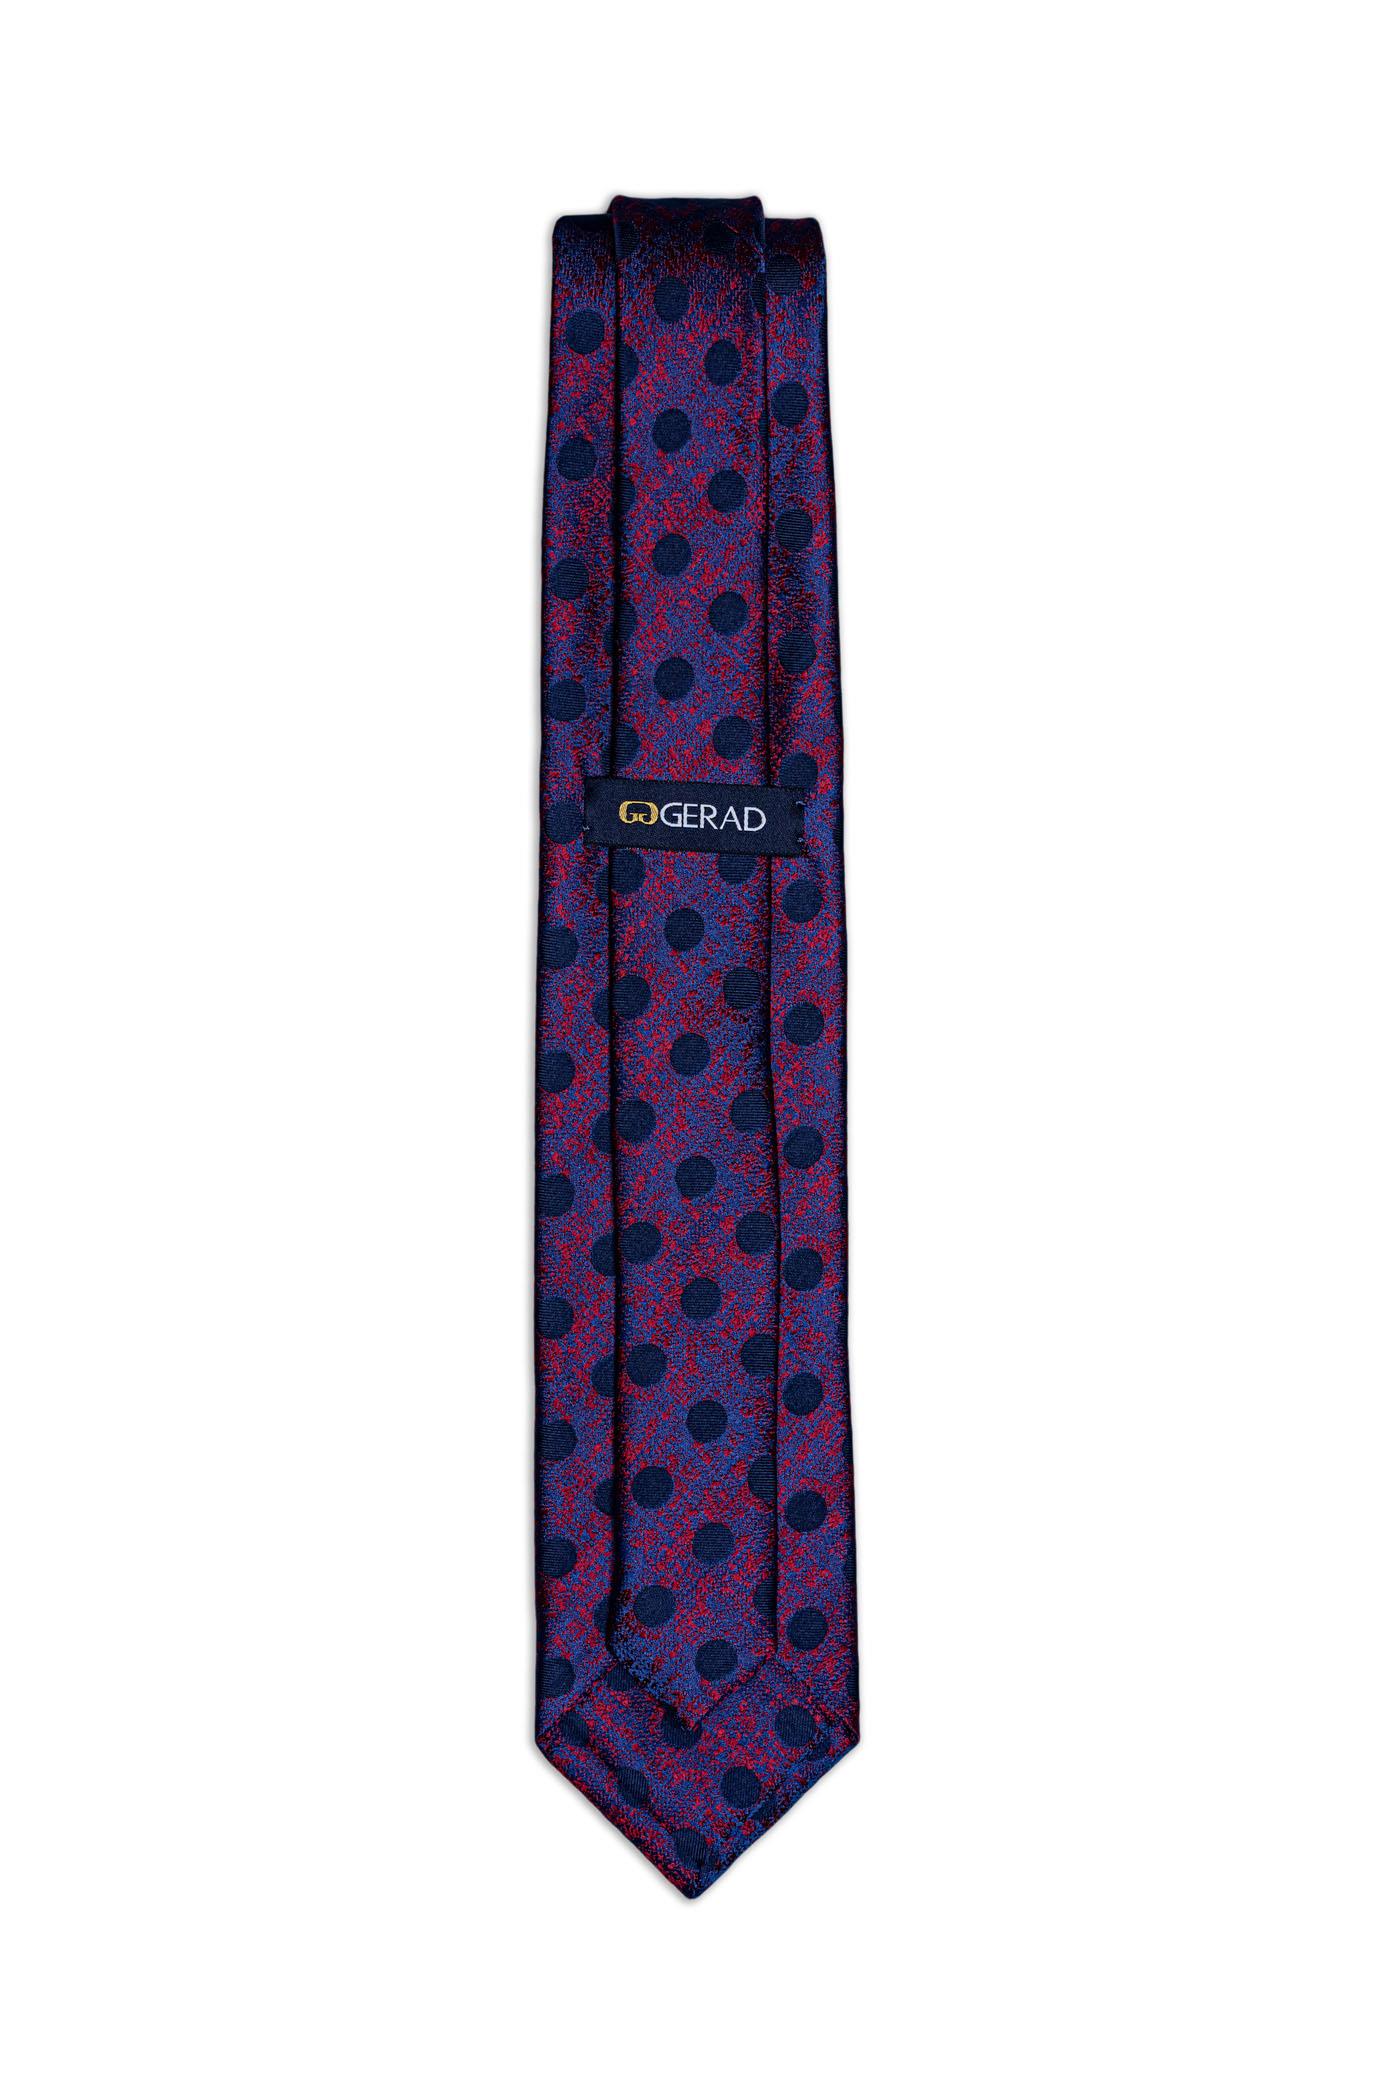 کراوات طرح دار (پوشت دار) 200016